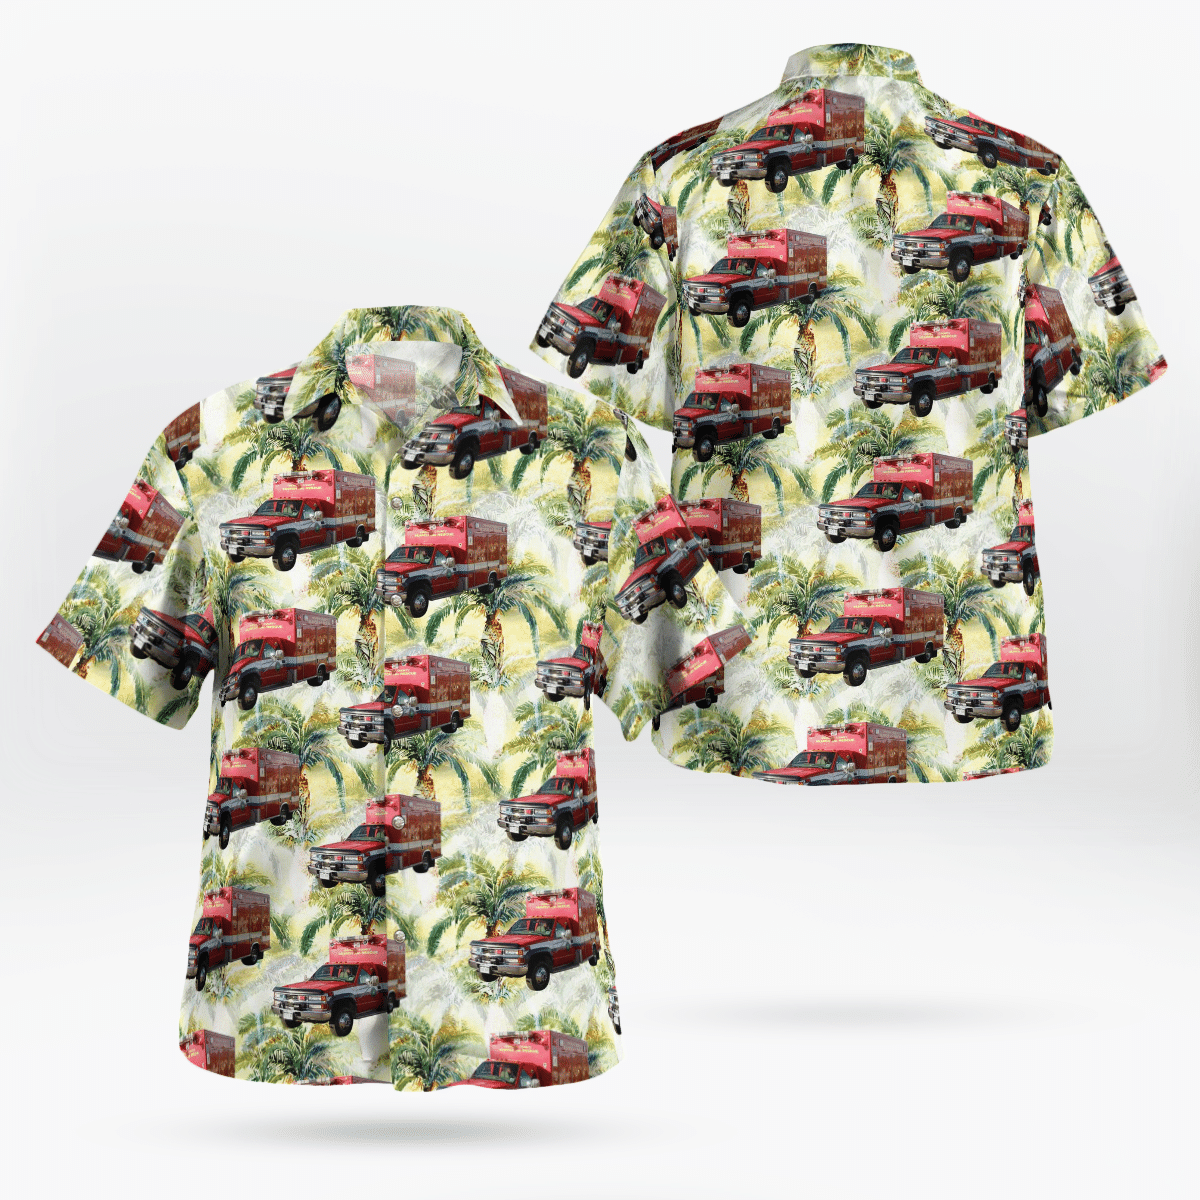 You won't regret buying these Aloha Shirt 227